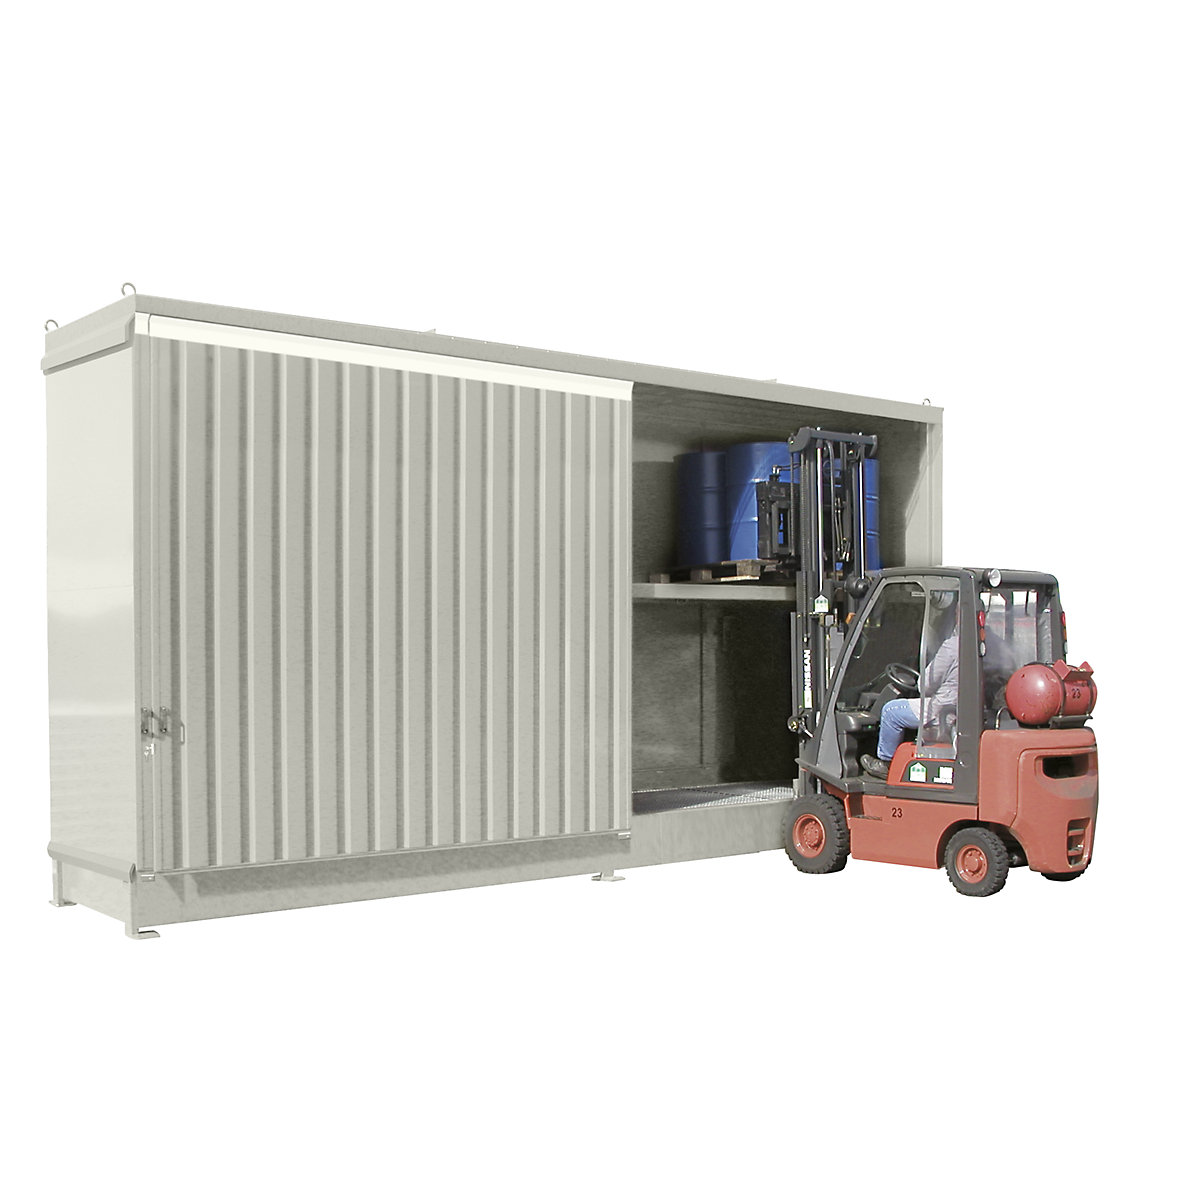 Stellingcontainer voor gevaarlijke stoffen – eurokraft pro, capaciteit 32 vaten van 200 l, grijswit-3